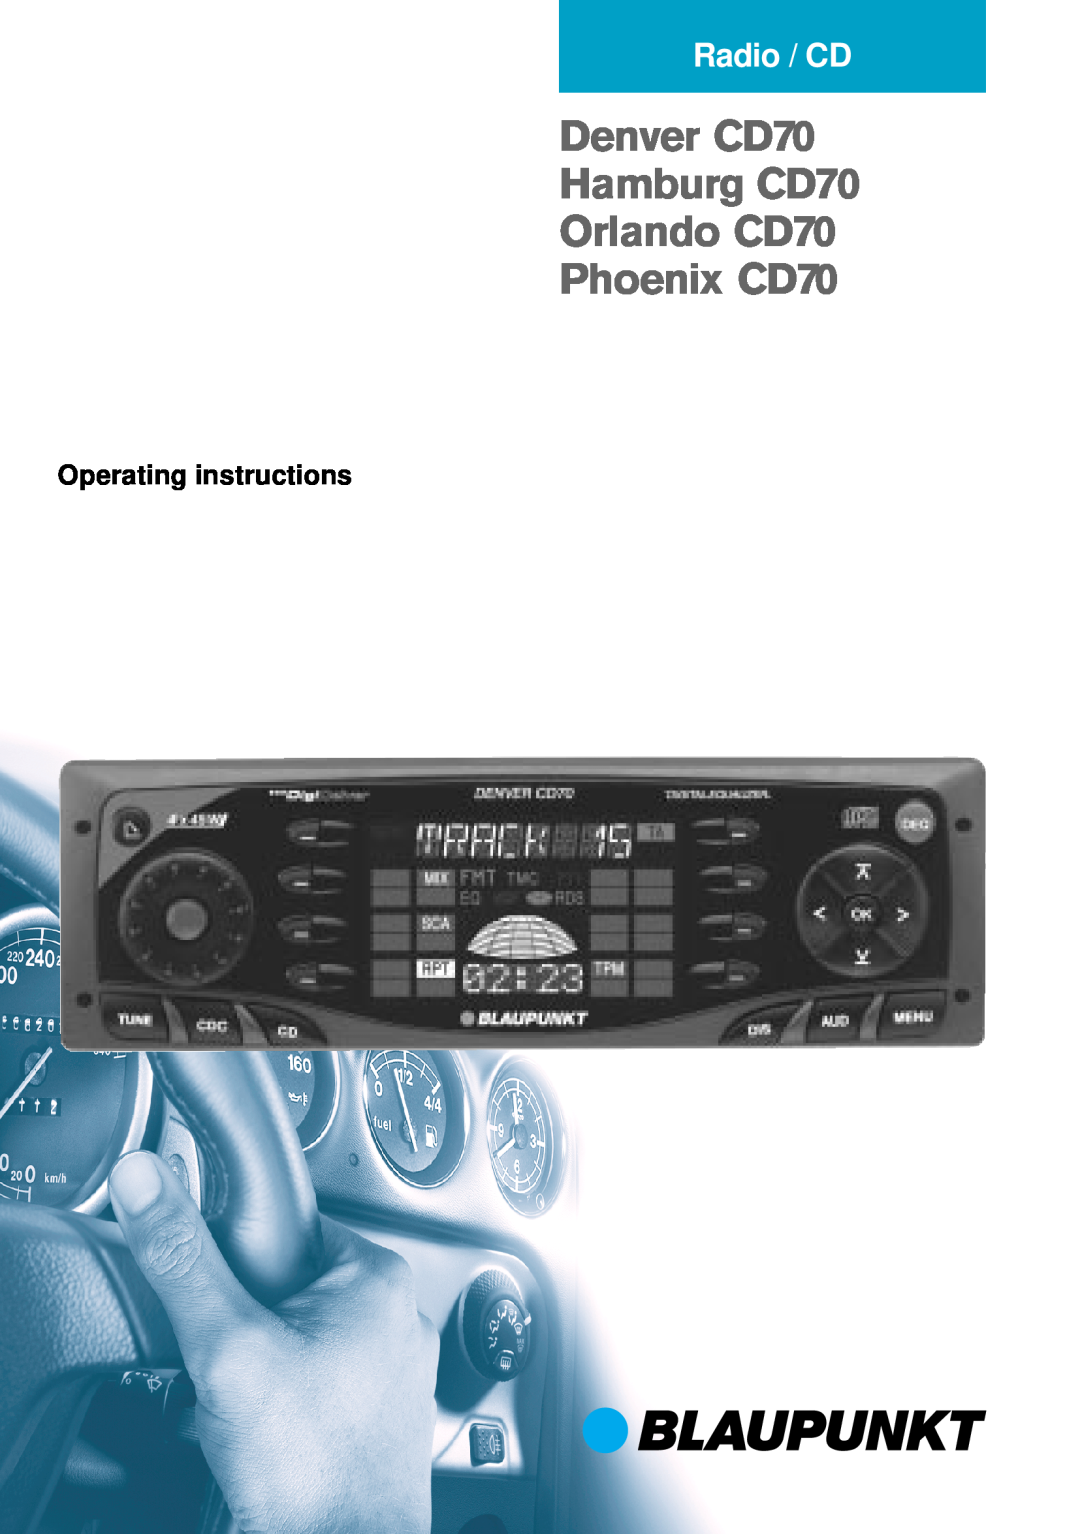 Blaupunkt operating instructions Operating instructions, Denver CD70 Hamburg CD70 Orlando CD70 Phoenix CD70, Radio / CD 